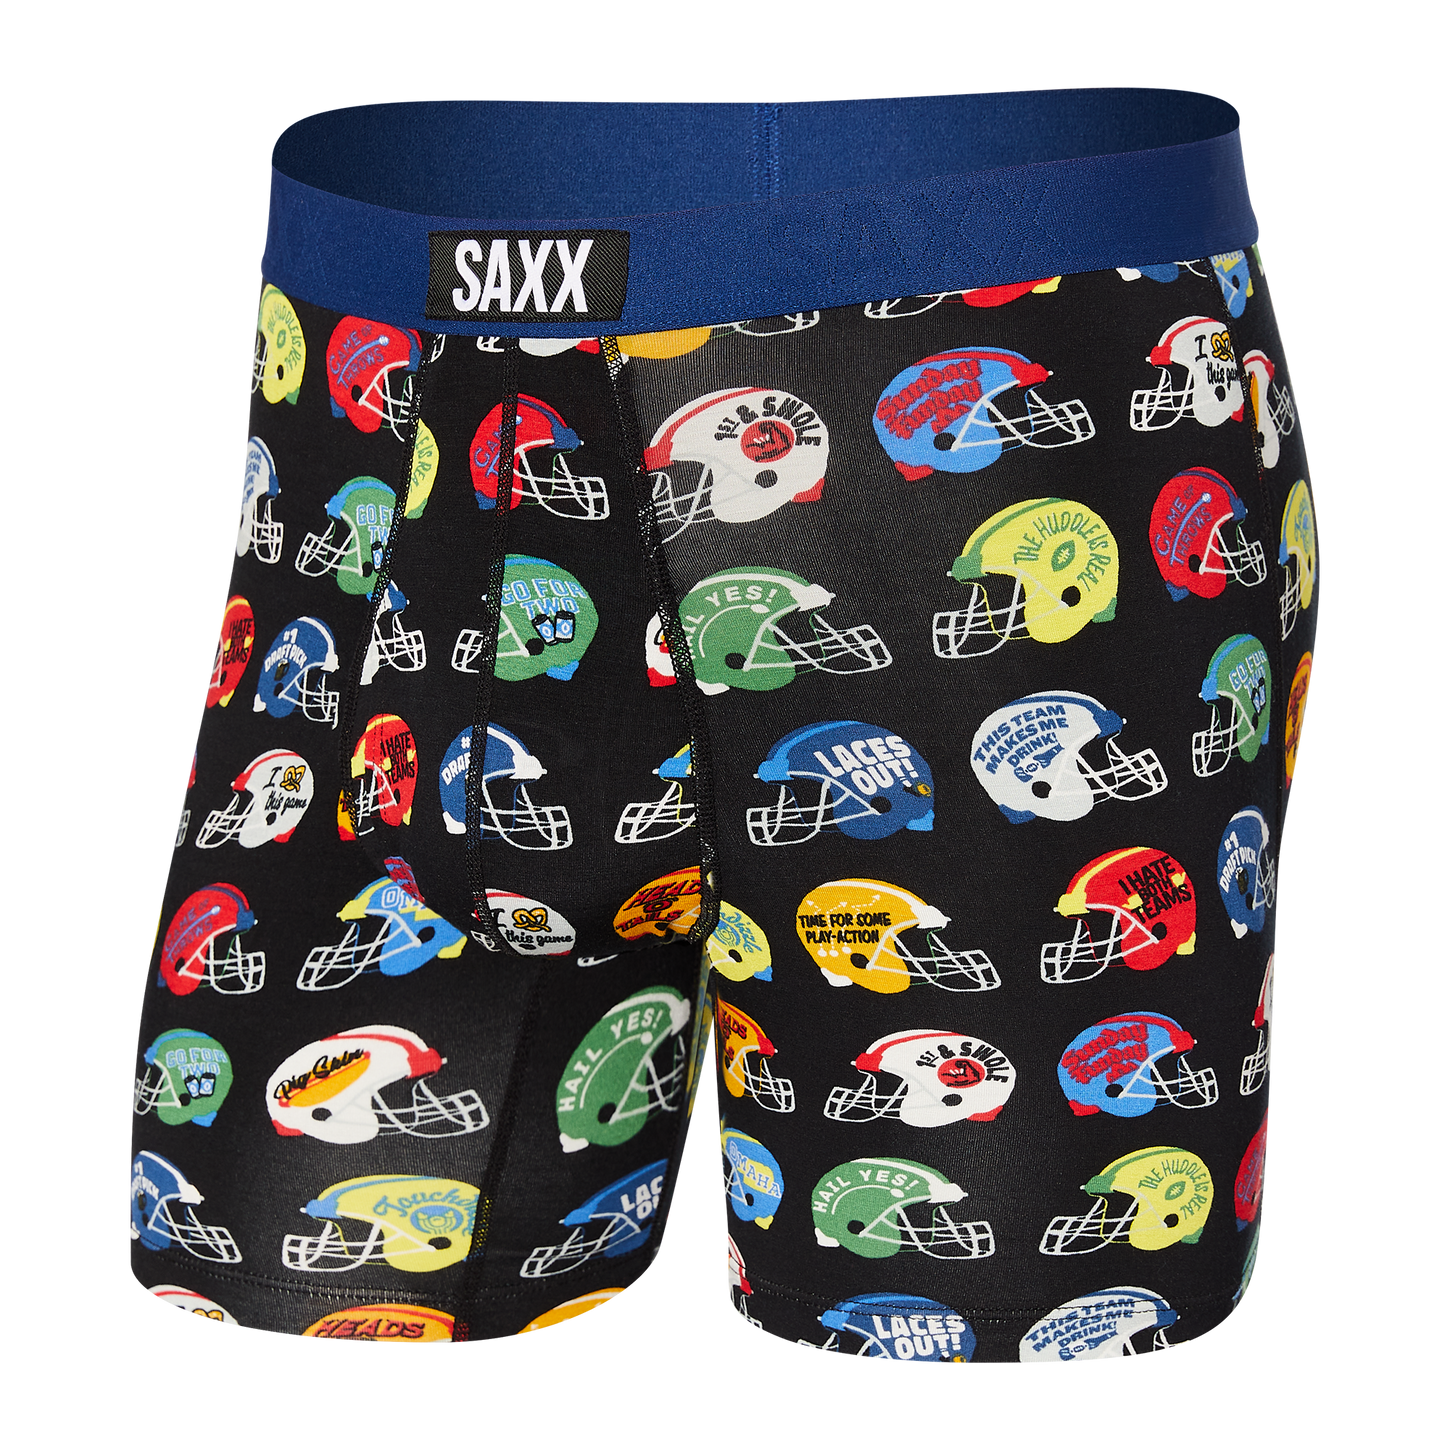 Saxx Underwear Vibe Boxer Brief #SXBM35 - In the Mood Intimates